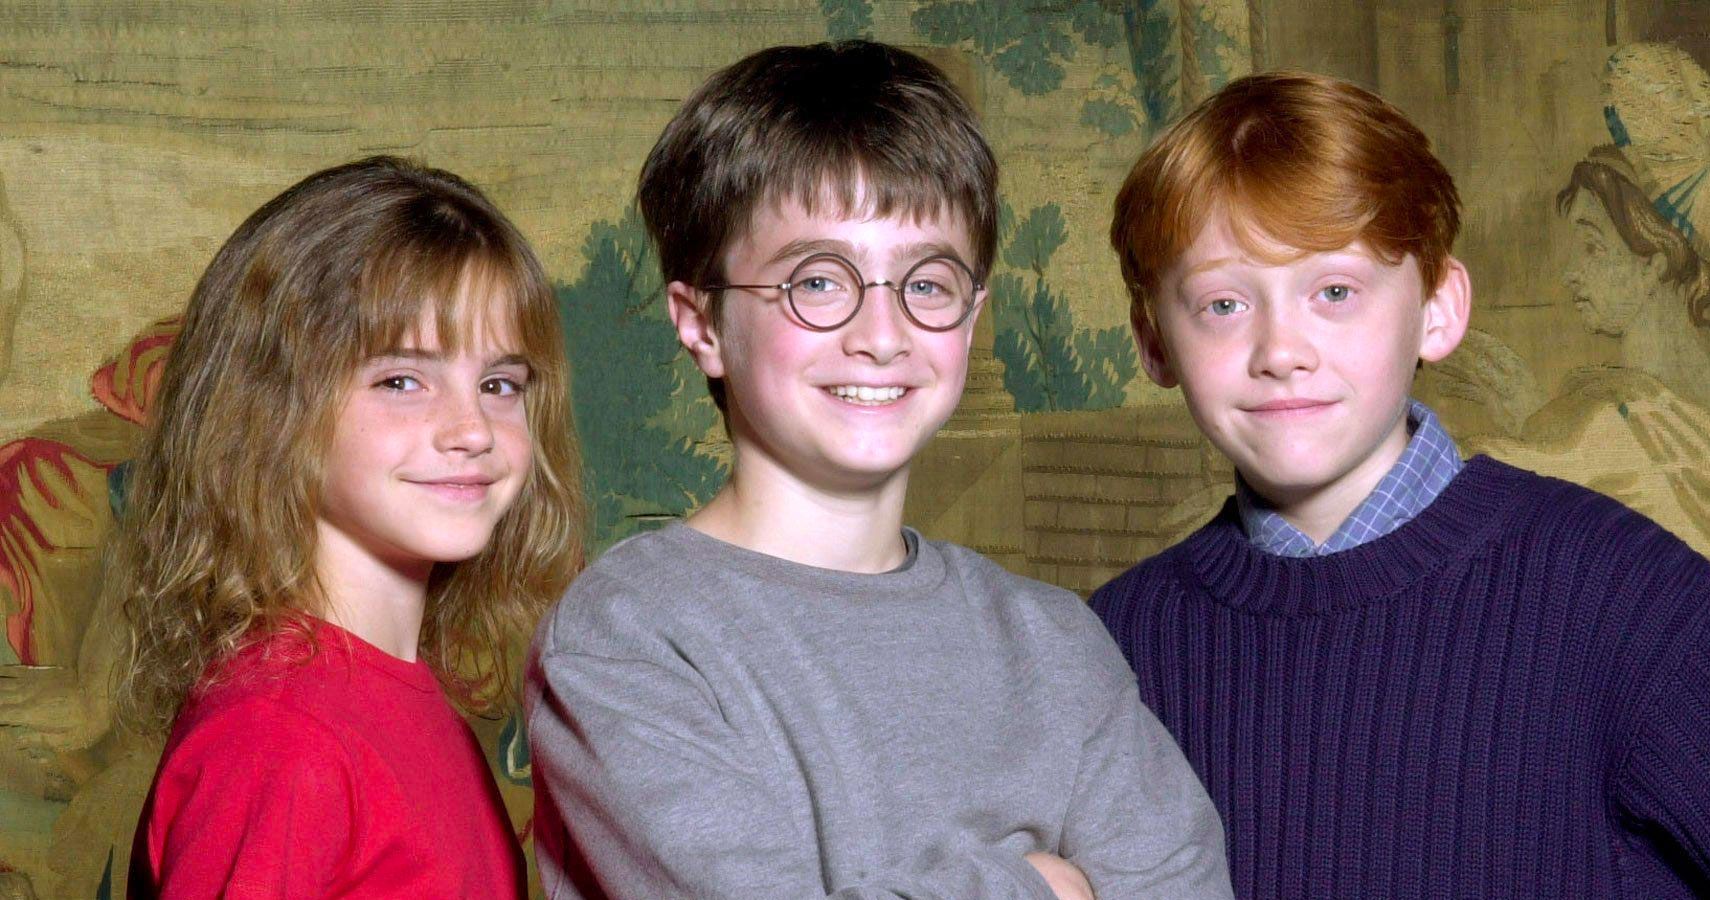 Aqui está o que os atores infantis de Harry Potter tiveram que passar